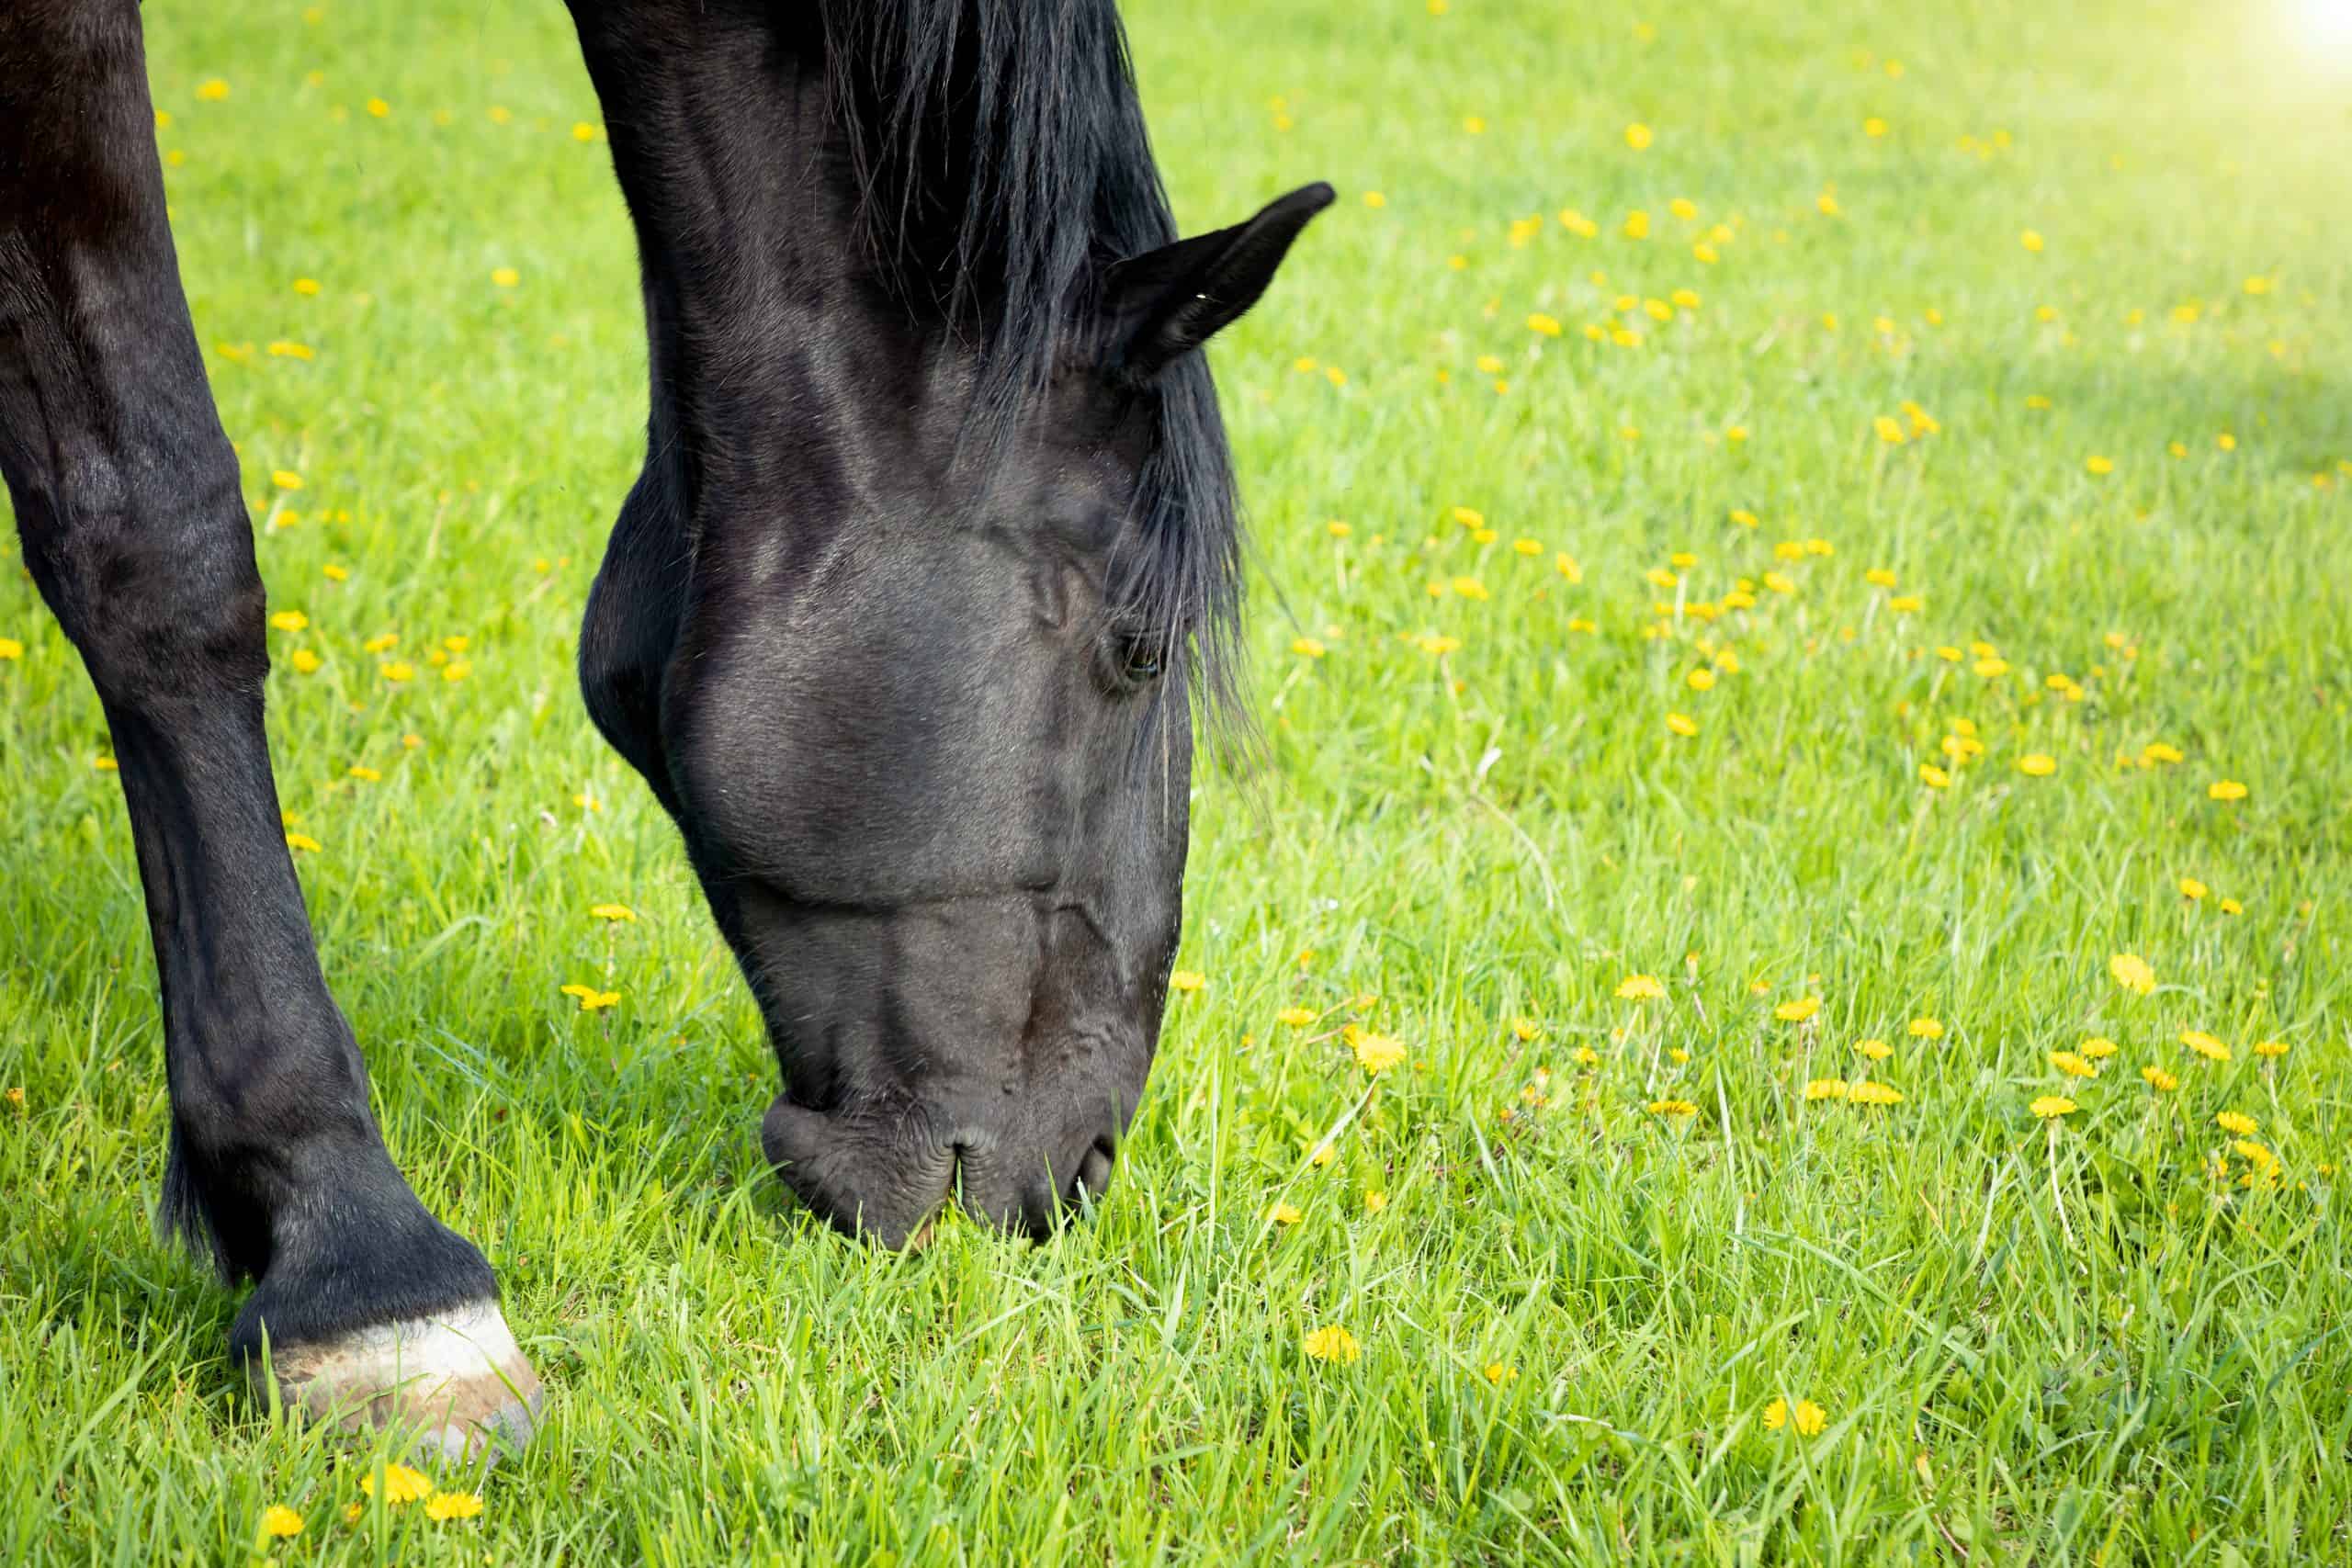 Horse eat spring grass in a field, Czech republic